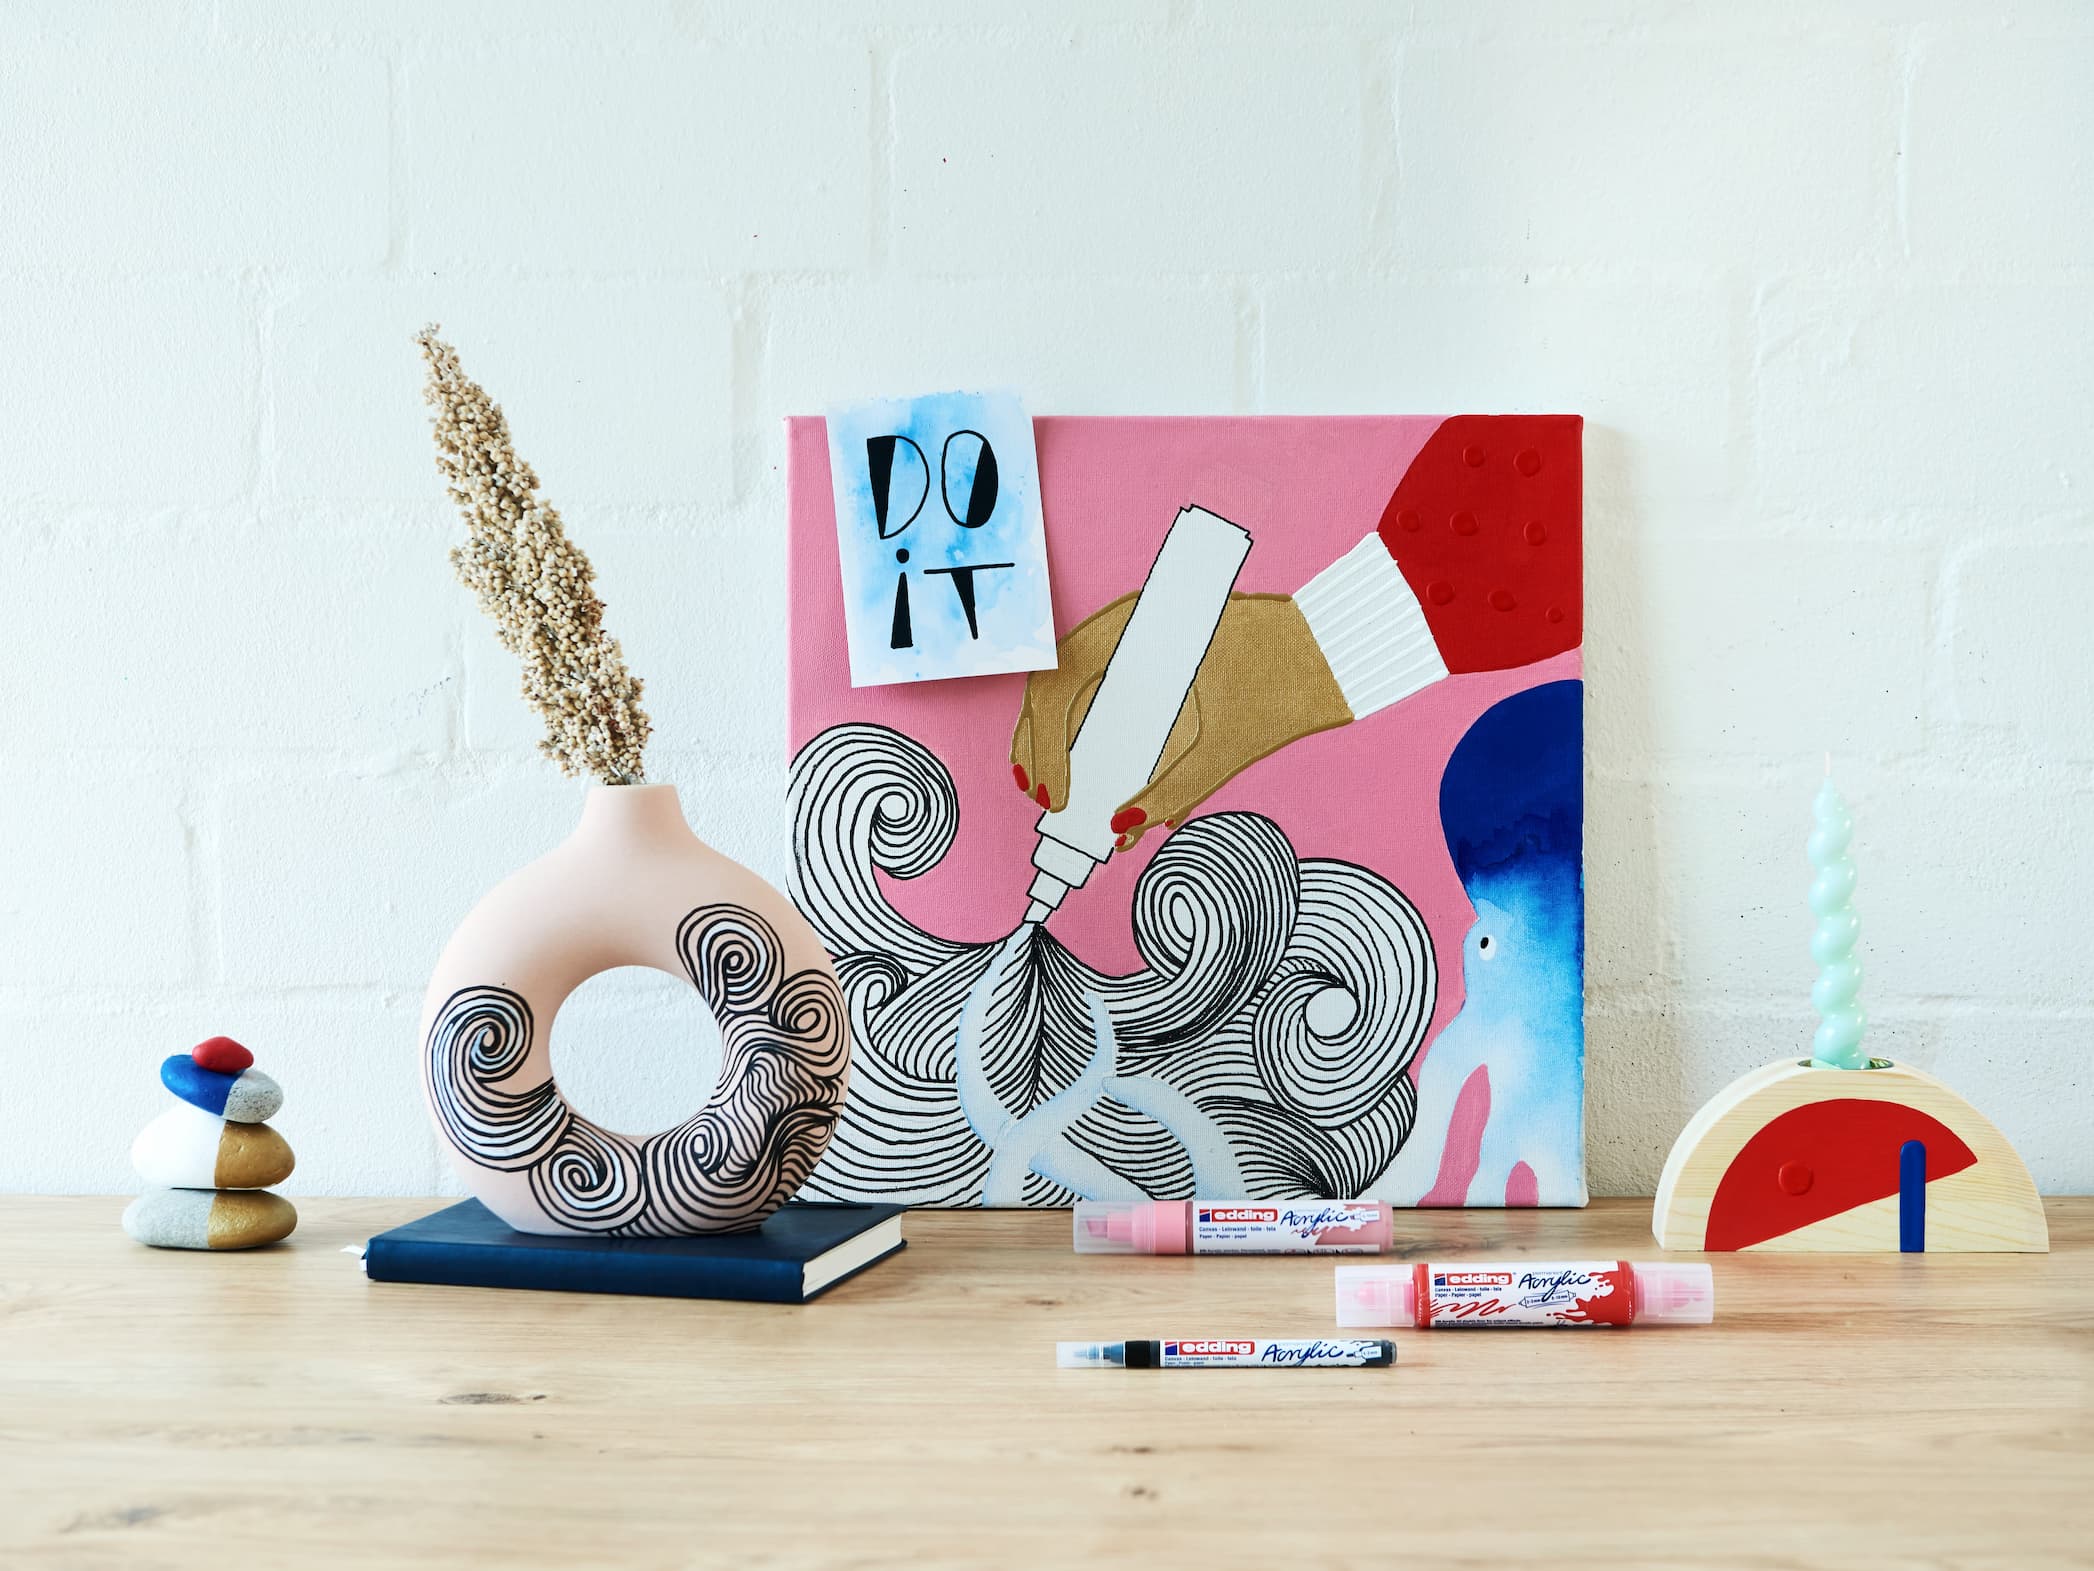 Ein kreativer und farbenfroher Arbeitsplatz mit künstlerischen Postern, einer Vielzahl einzigartiger Dekorationsgegenstände und edding 5100 Acrylmarker-Mediumzubehör auf einem Holztisch vor einer weißen Ziegelwand.